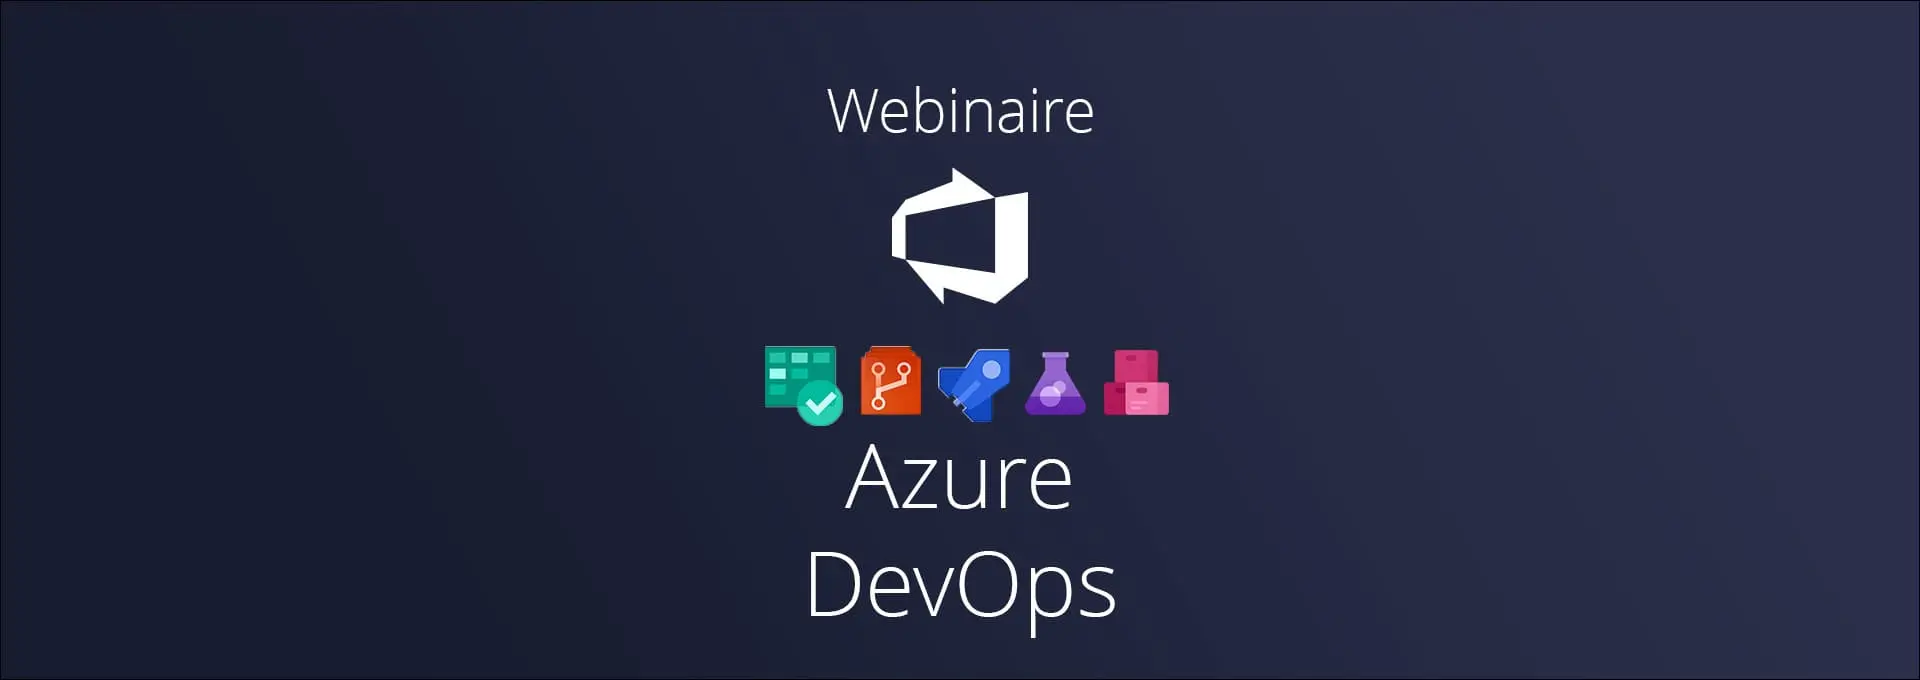 Actualités Webinaires - À quoi sert Azure DevOps ?